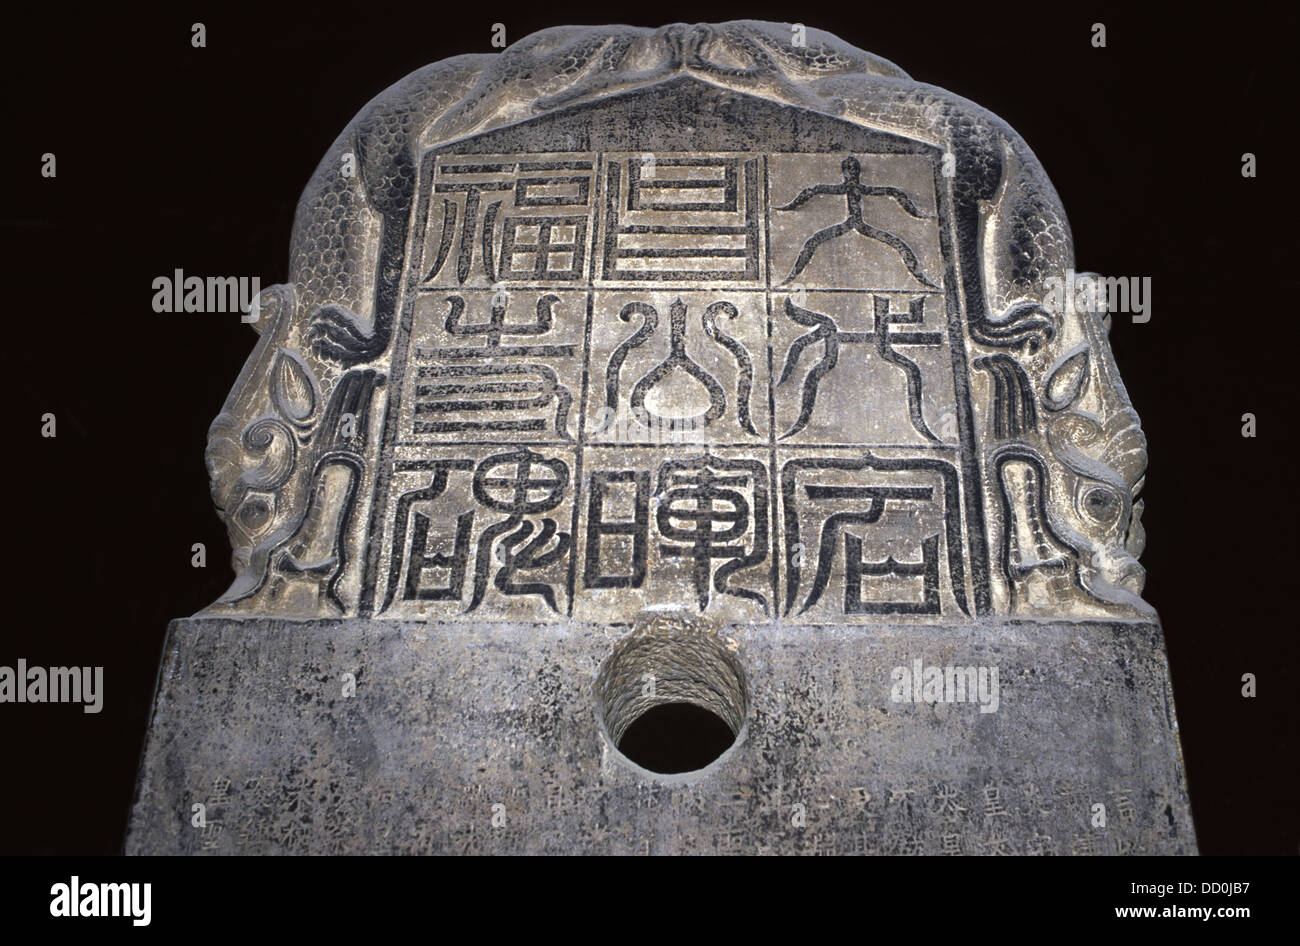 Detalle de la tableta nestoriana con antigua caligrafía China de la dinastía Tang exhibida en el Bosque de Stele, o Museo Beilin en Xi'an, la ciudad capital de la provincia de Shaanxi, China Foto de stock